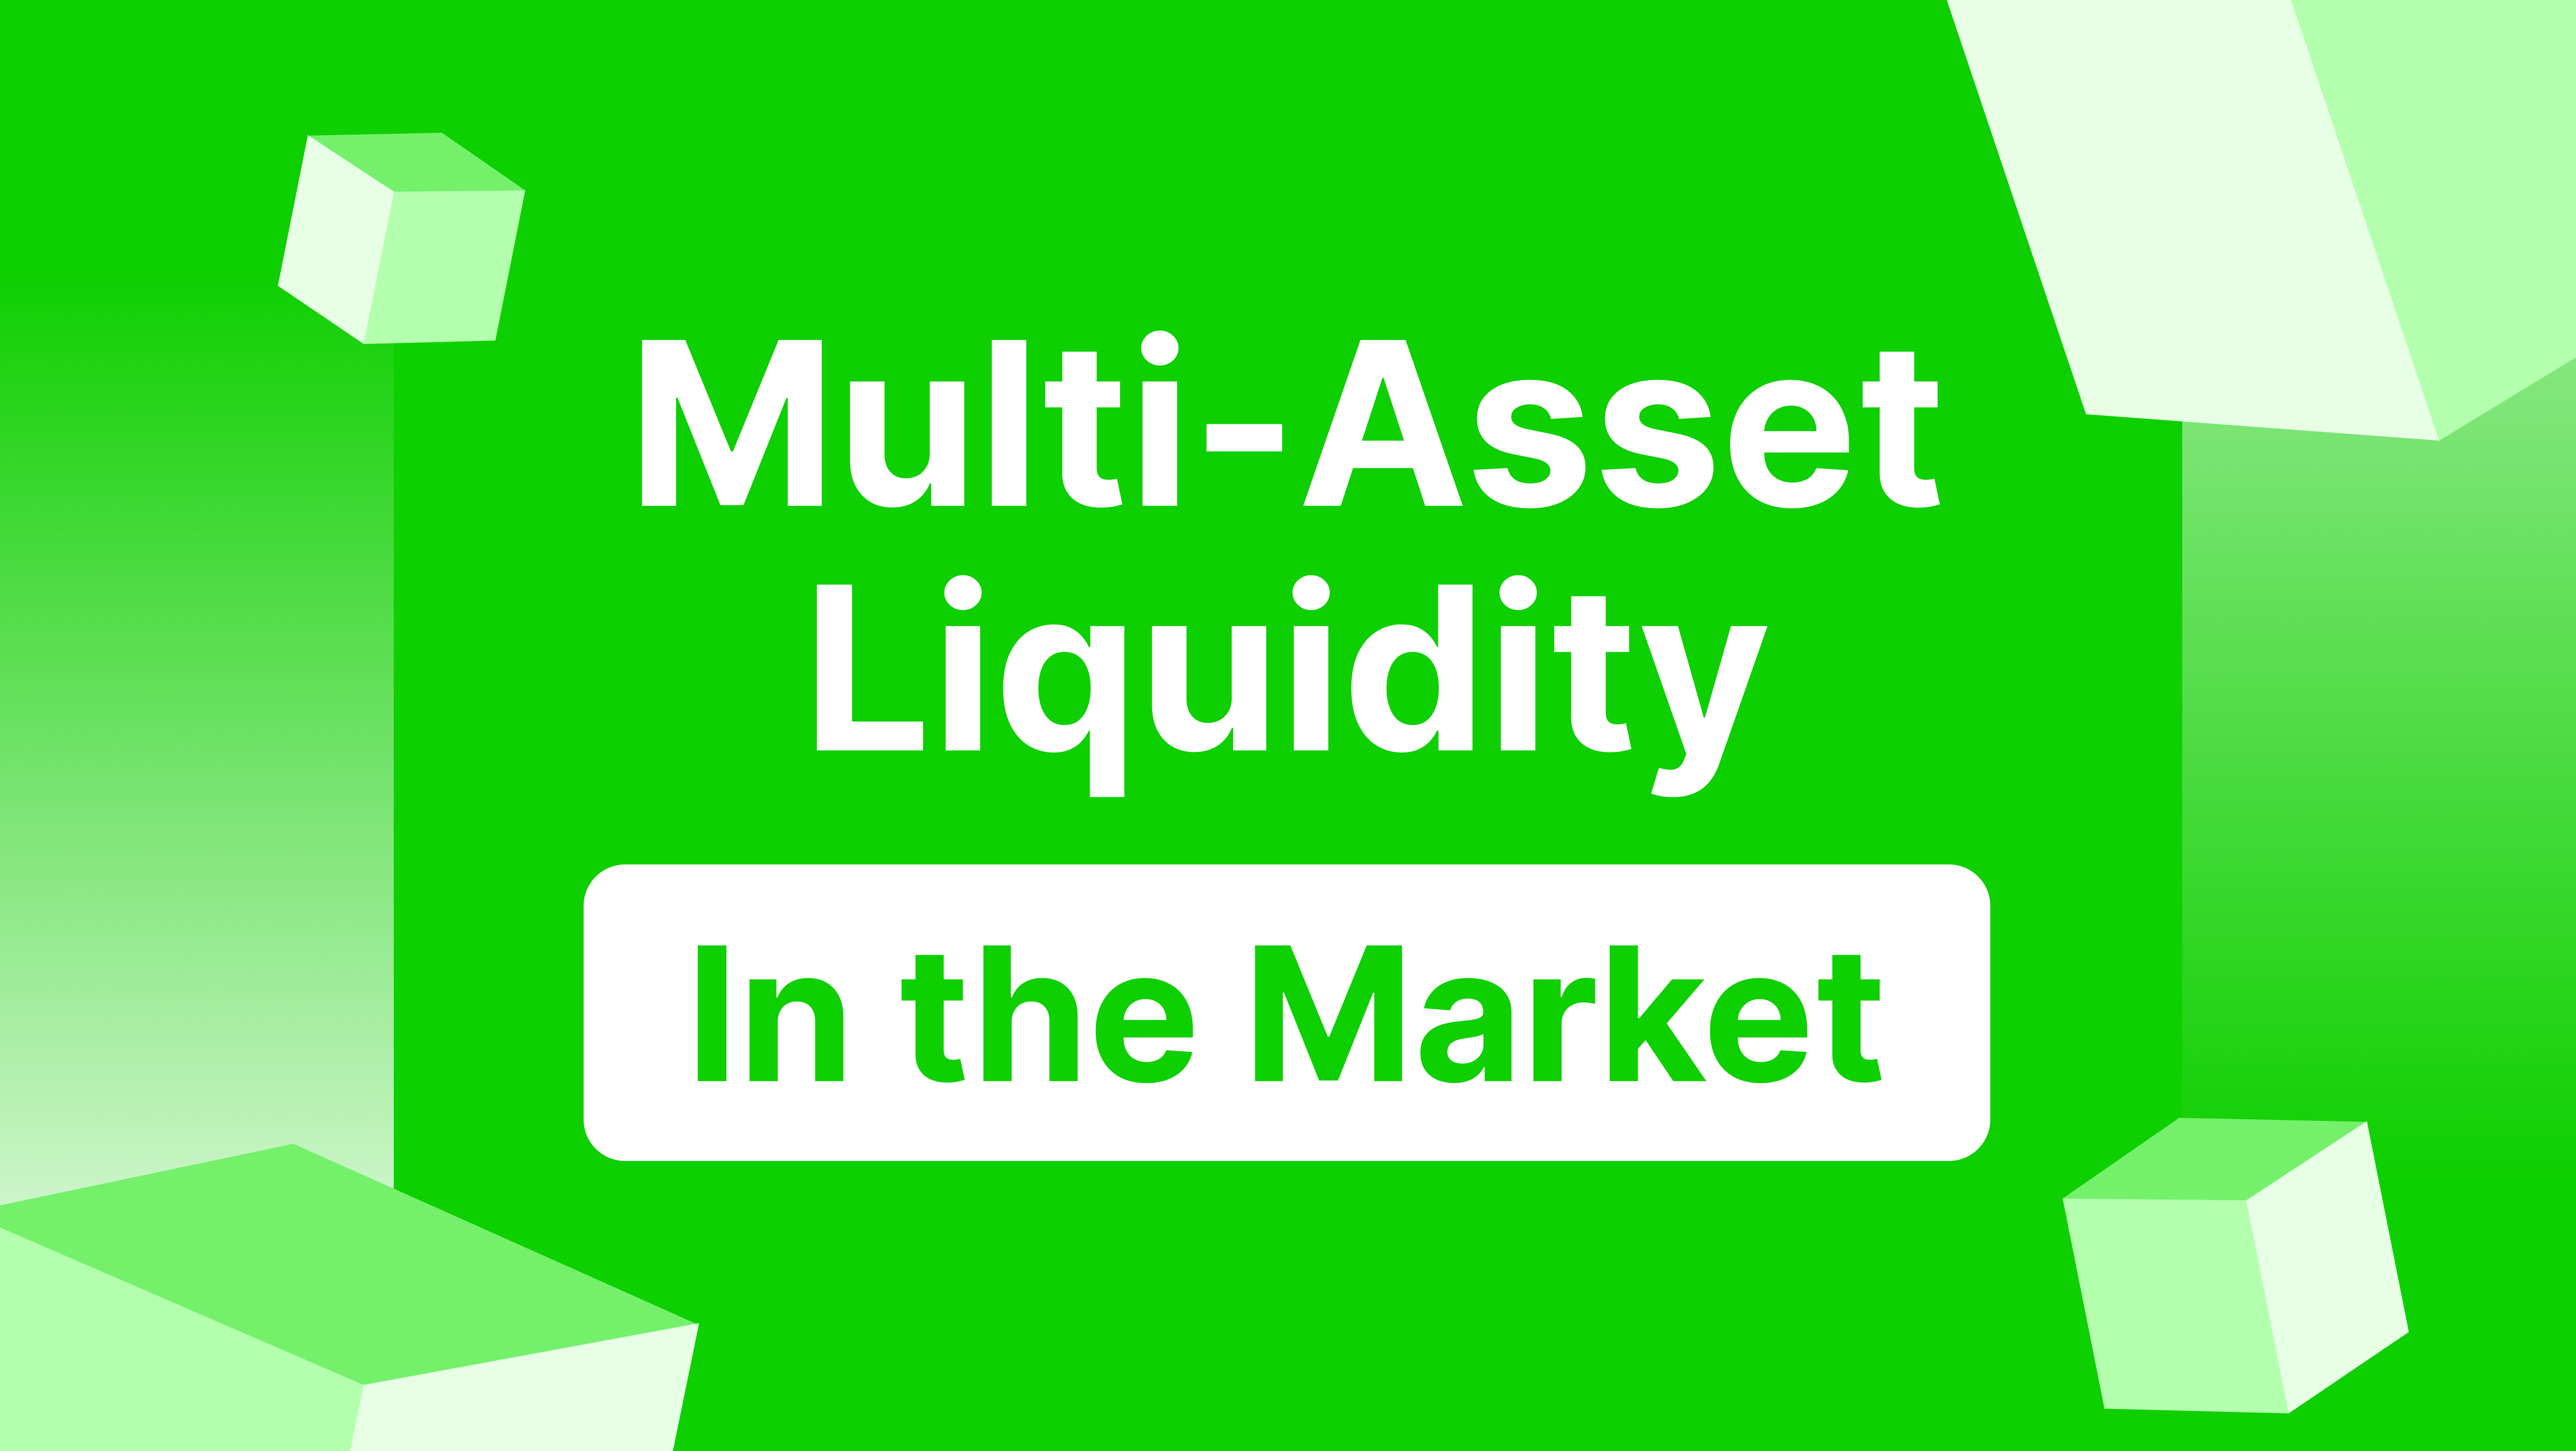 Multi-asset liquidity in the market